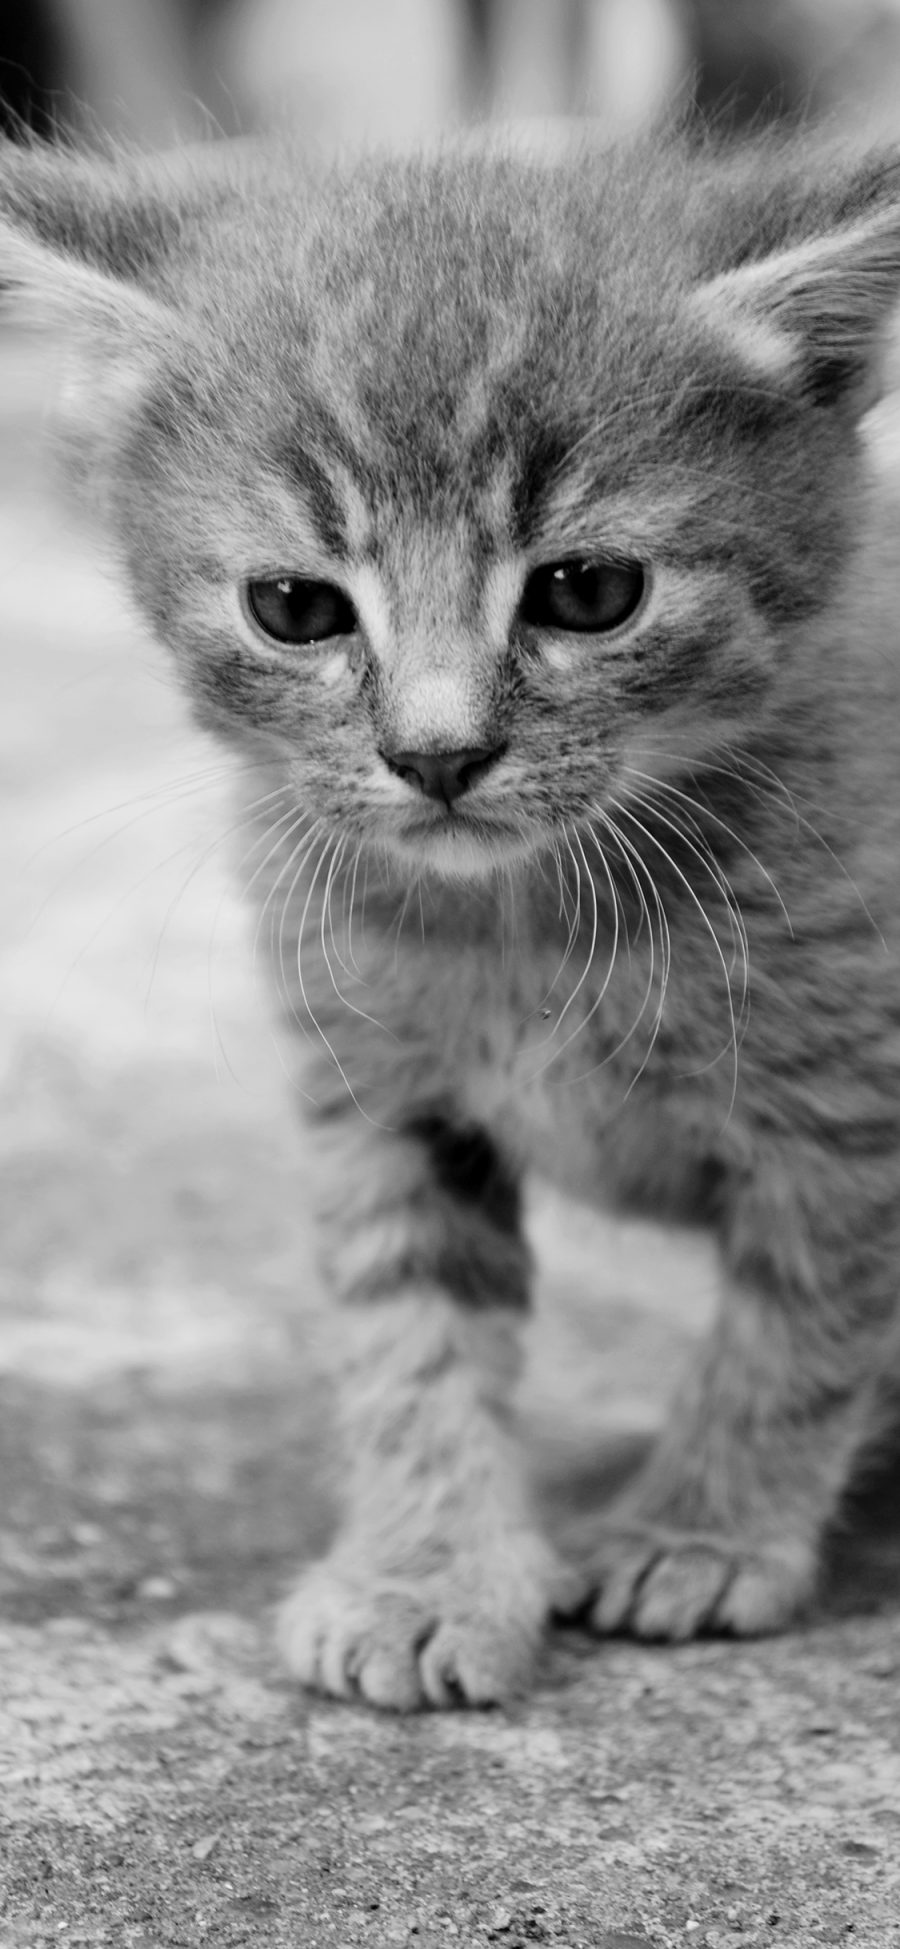 [2436×1125]猫咪 可爱 宠物 灰猫 小奶猫 苹果手机壁纸图片